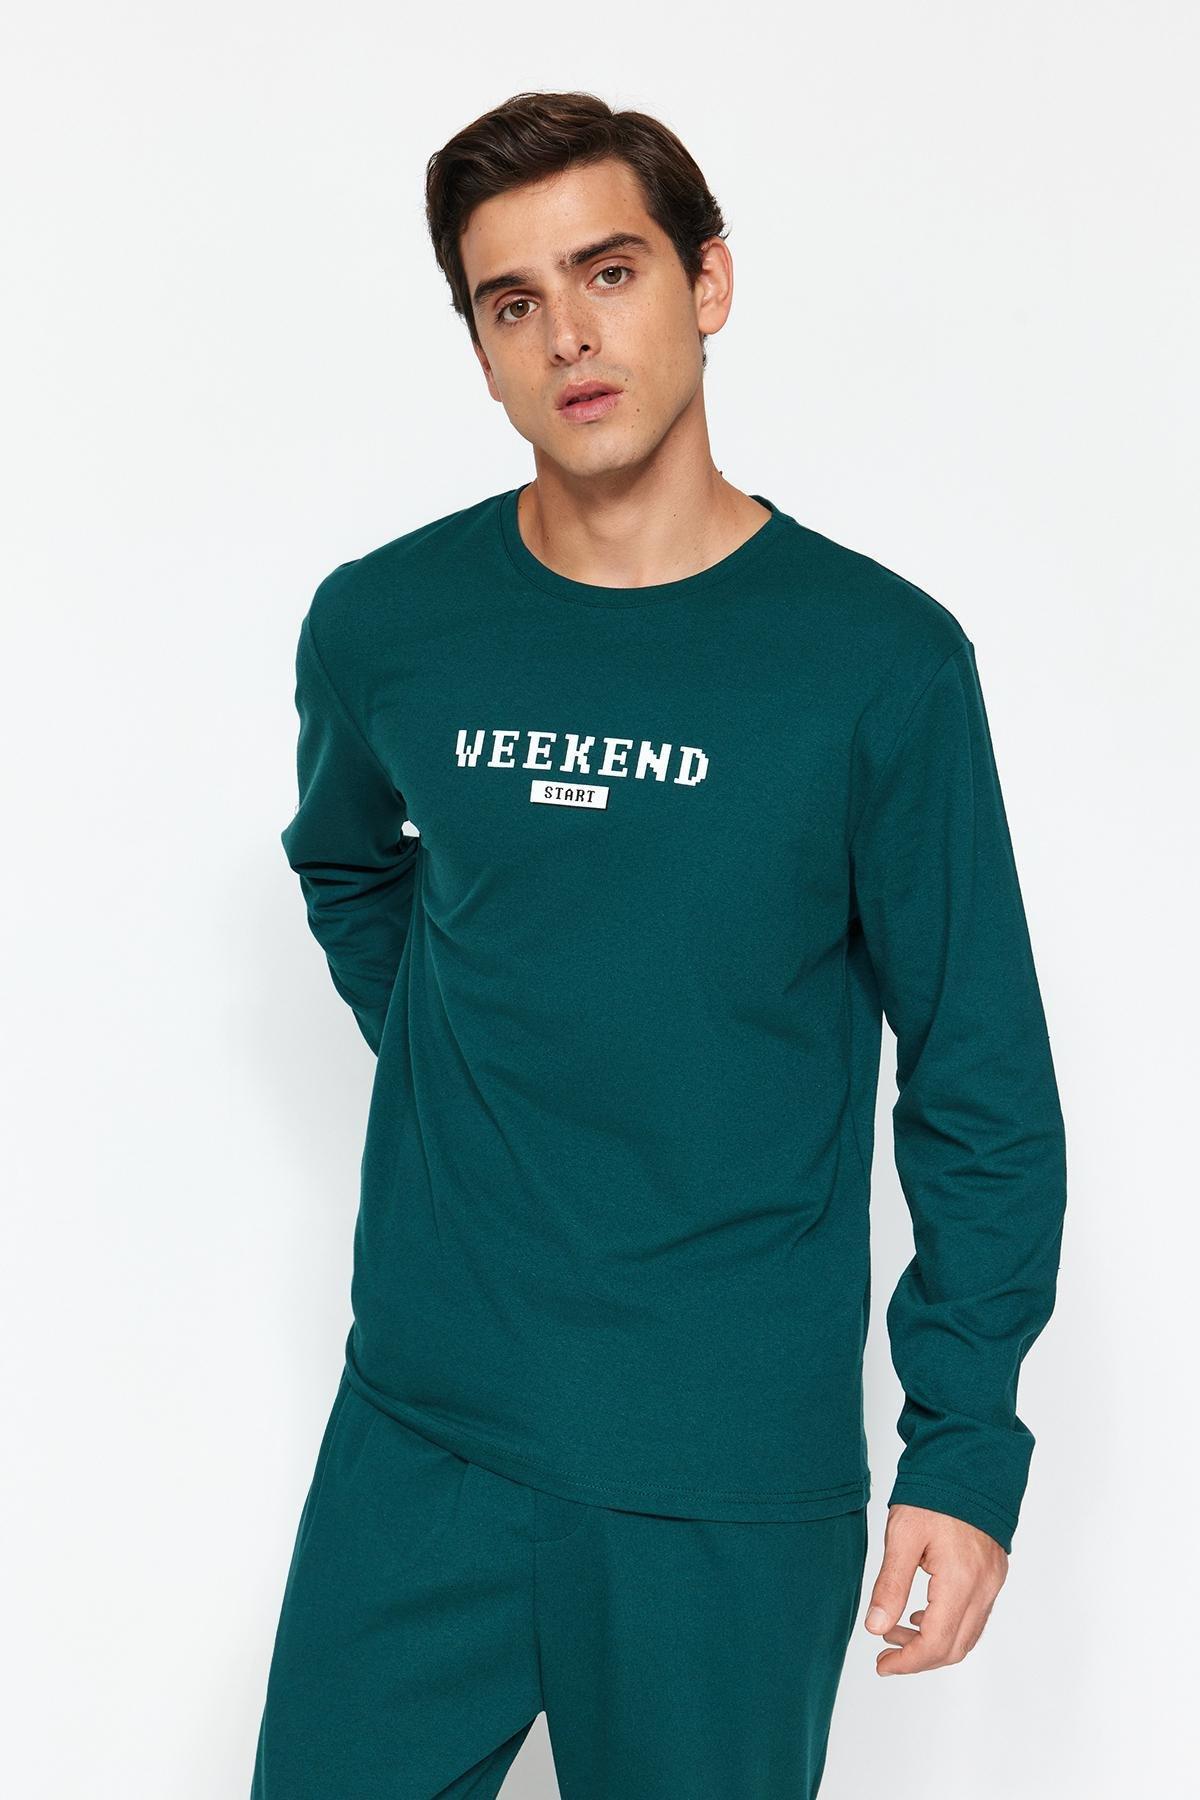 Trendyol - Green Printed Knitted Pyjamas Set